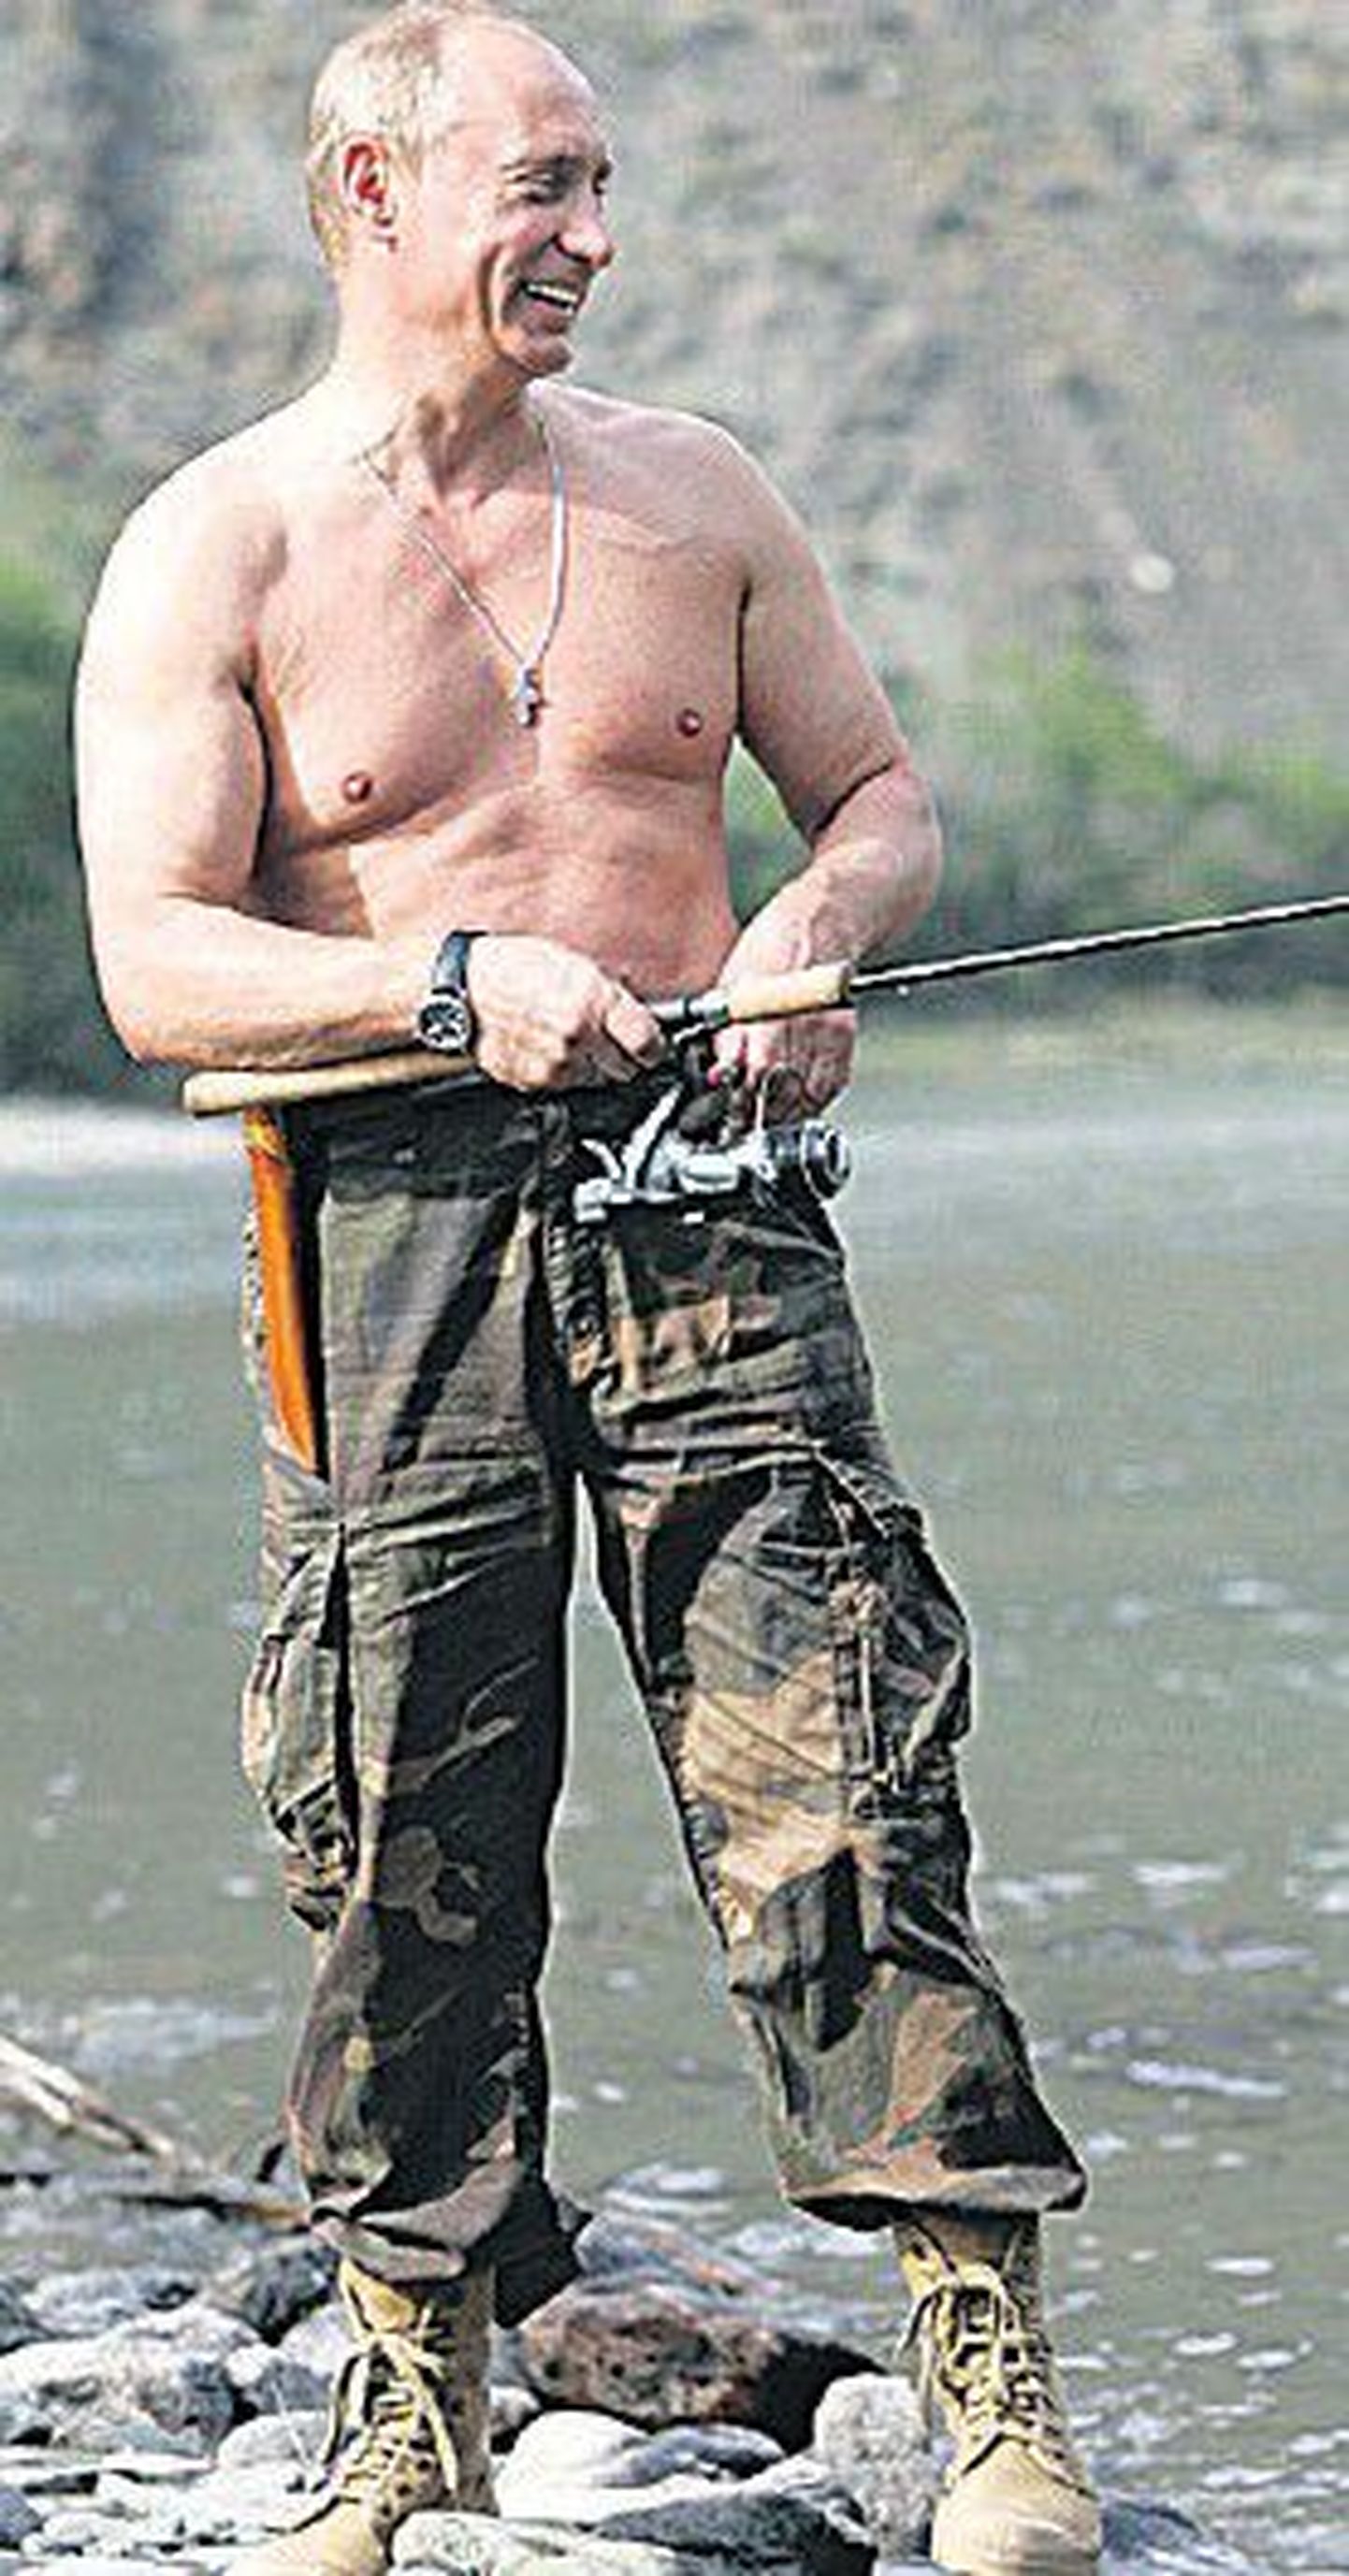 Фото, известное всему миру: Путин на рыбалке в 2007 году.